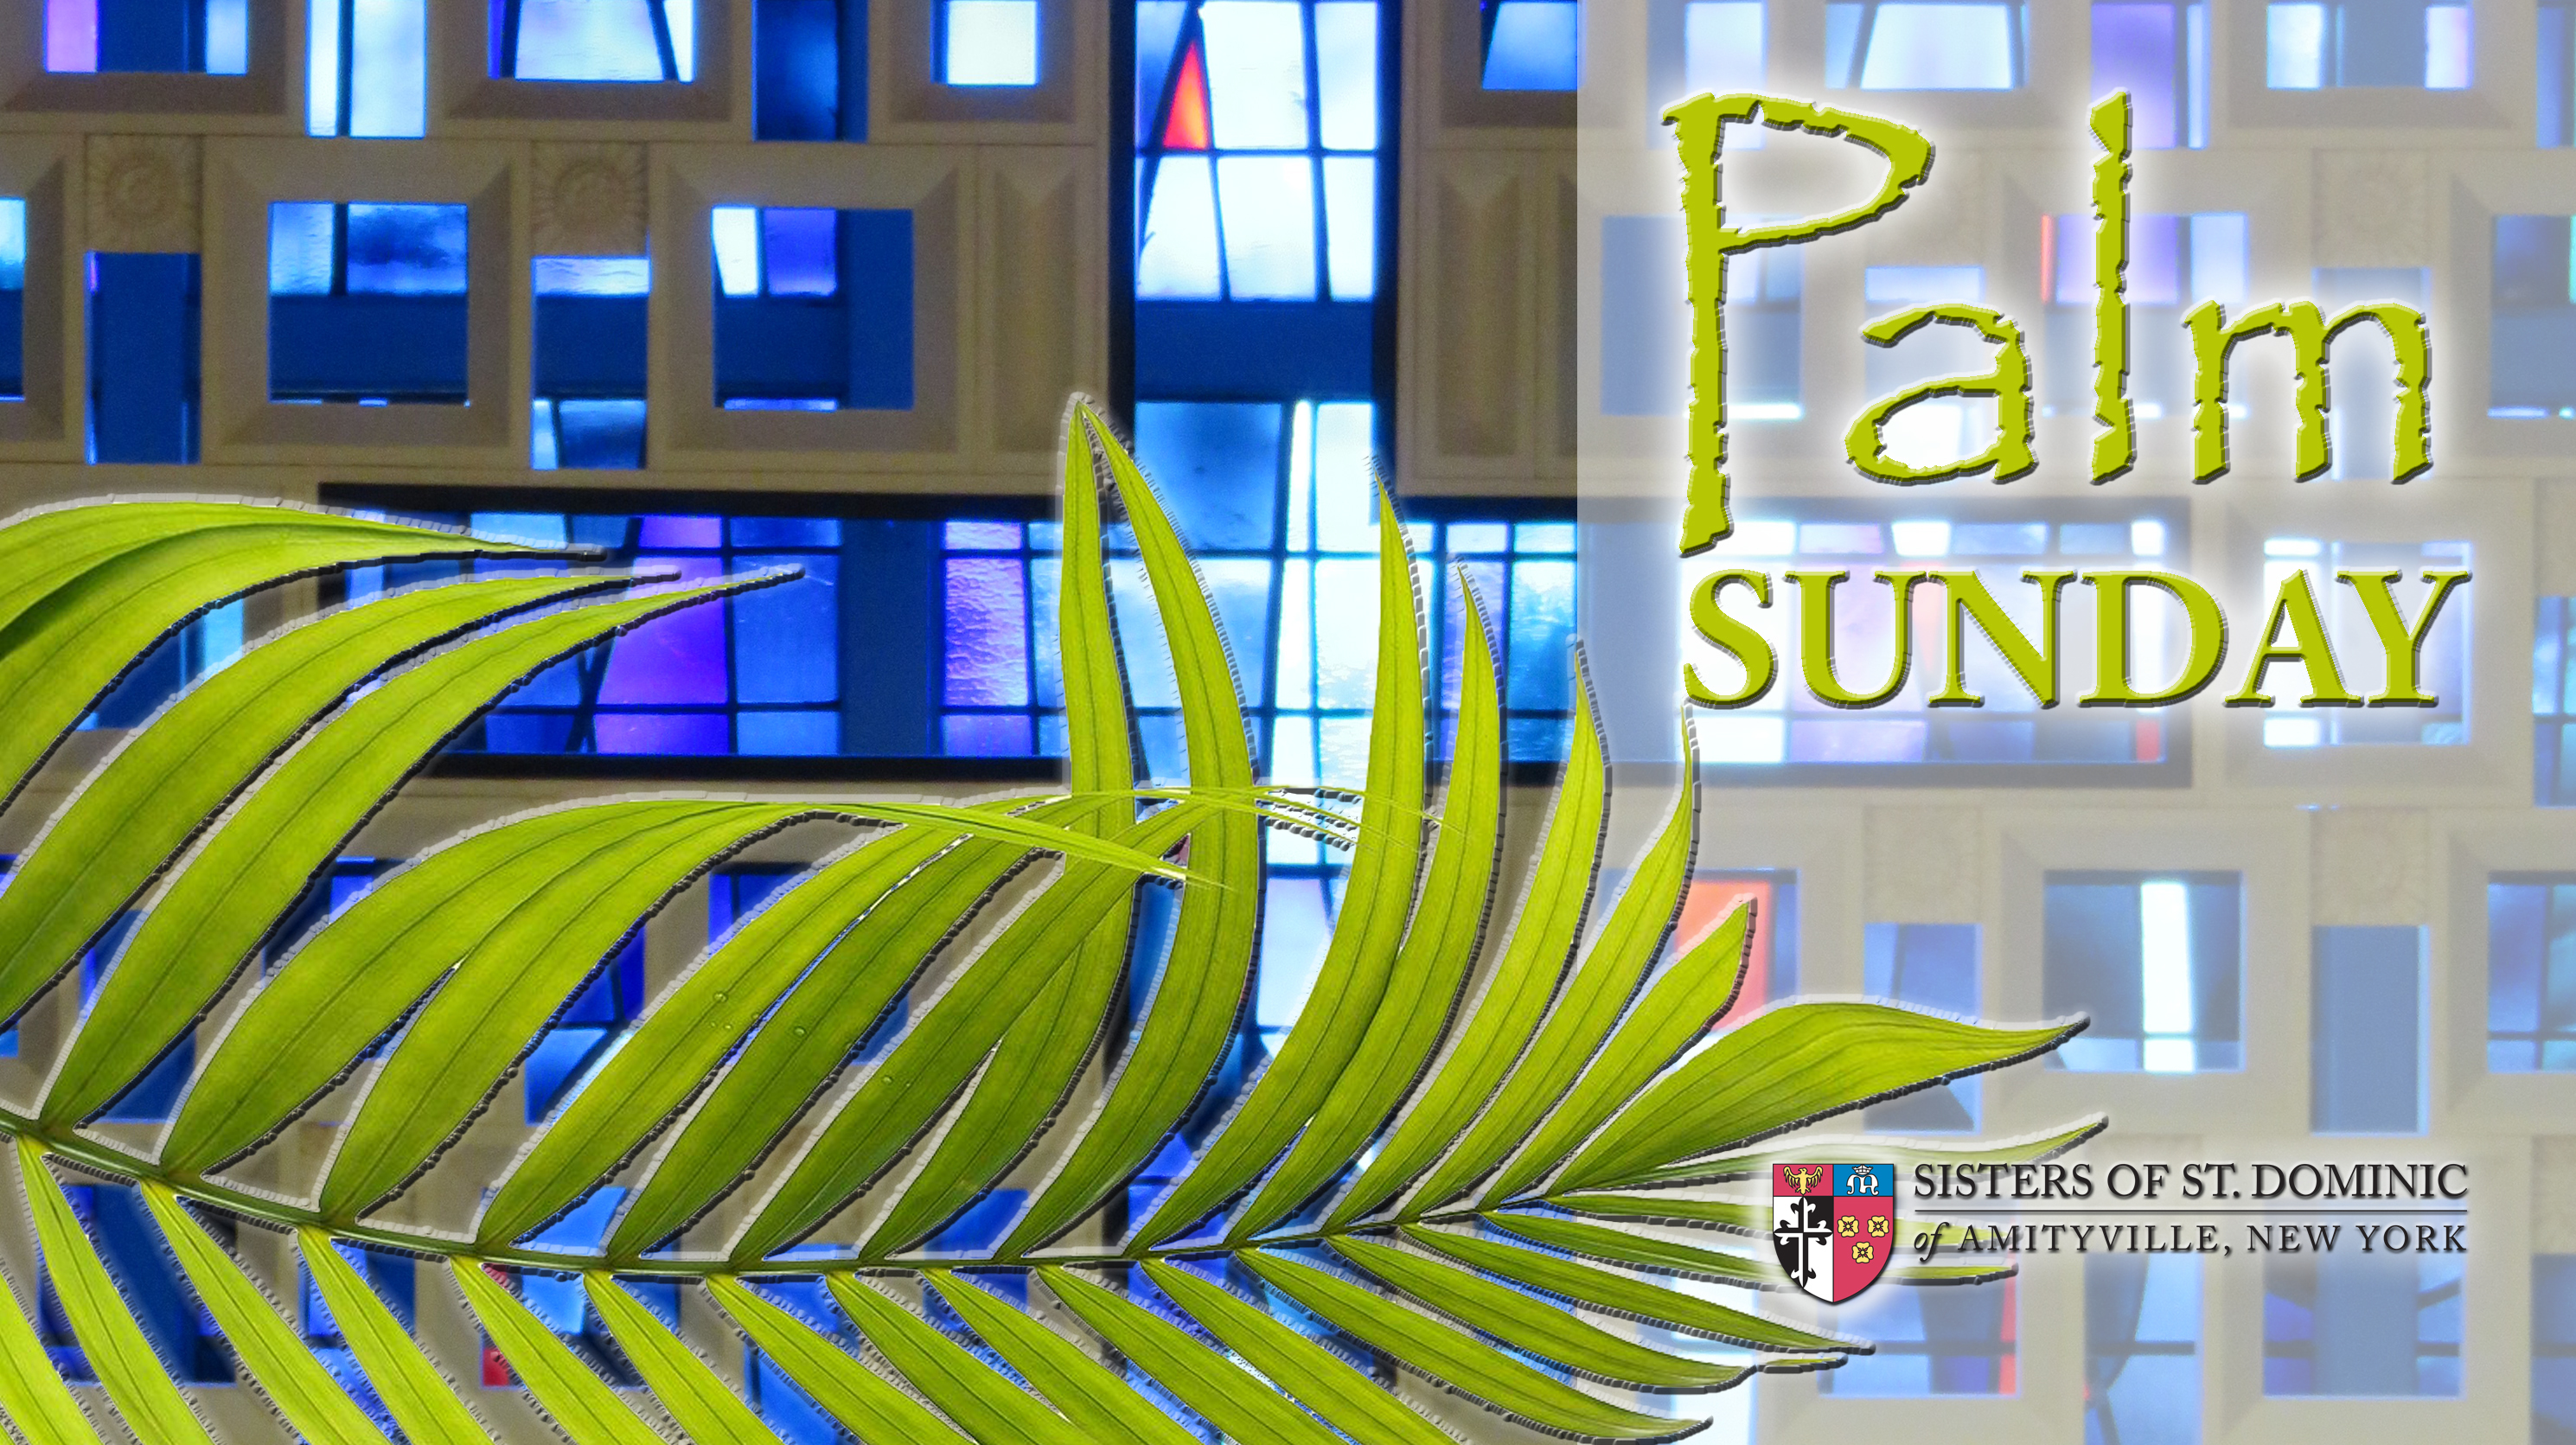 Palm Sunday Mass on Livestream